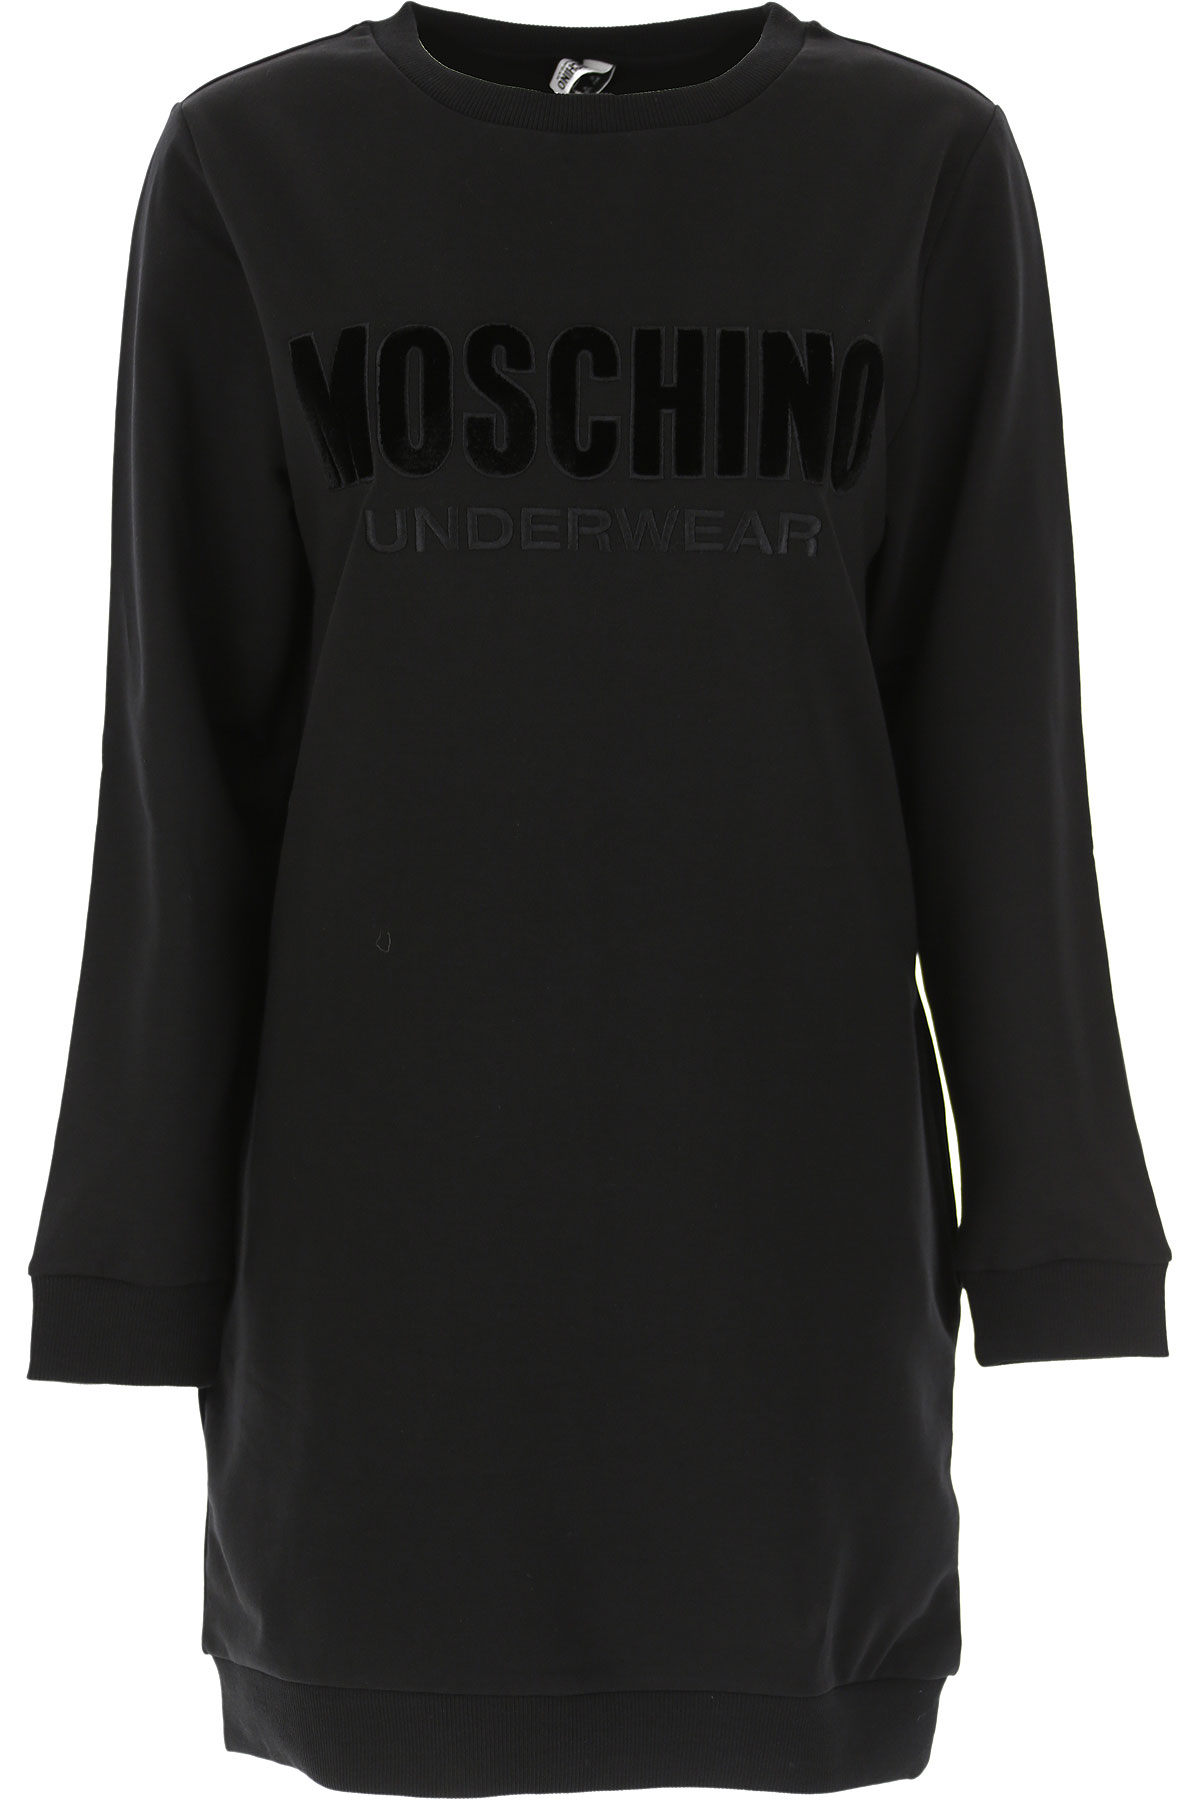 Moschino Sweatshirt für Damen, Kapuzenpulli, Hoodie, Sweats Günstig im Sale, Schwarz, Baumwolle, 2017, 44 M